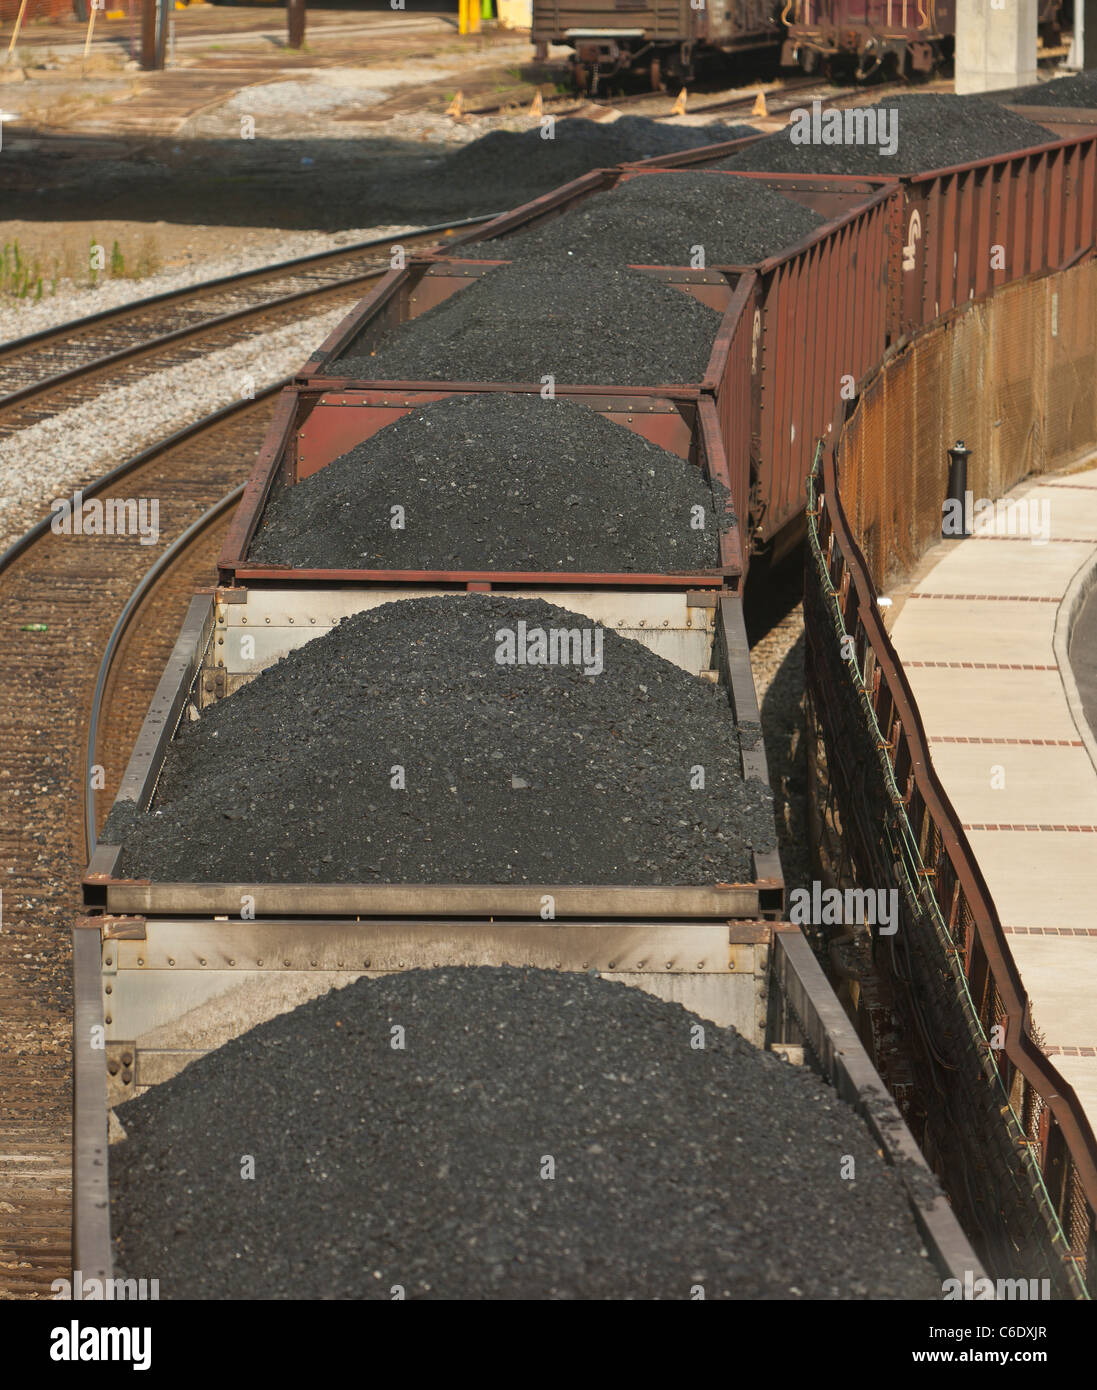 ROANOKE, Virginie, USA - wagons de charbon sur chemin de fer. Banque D'Images